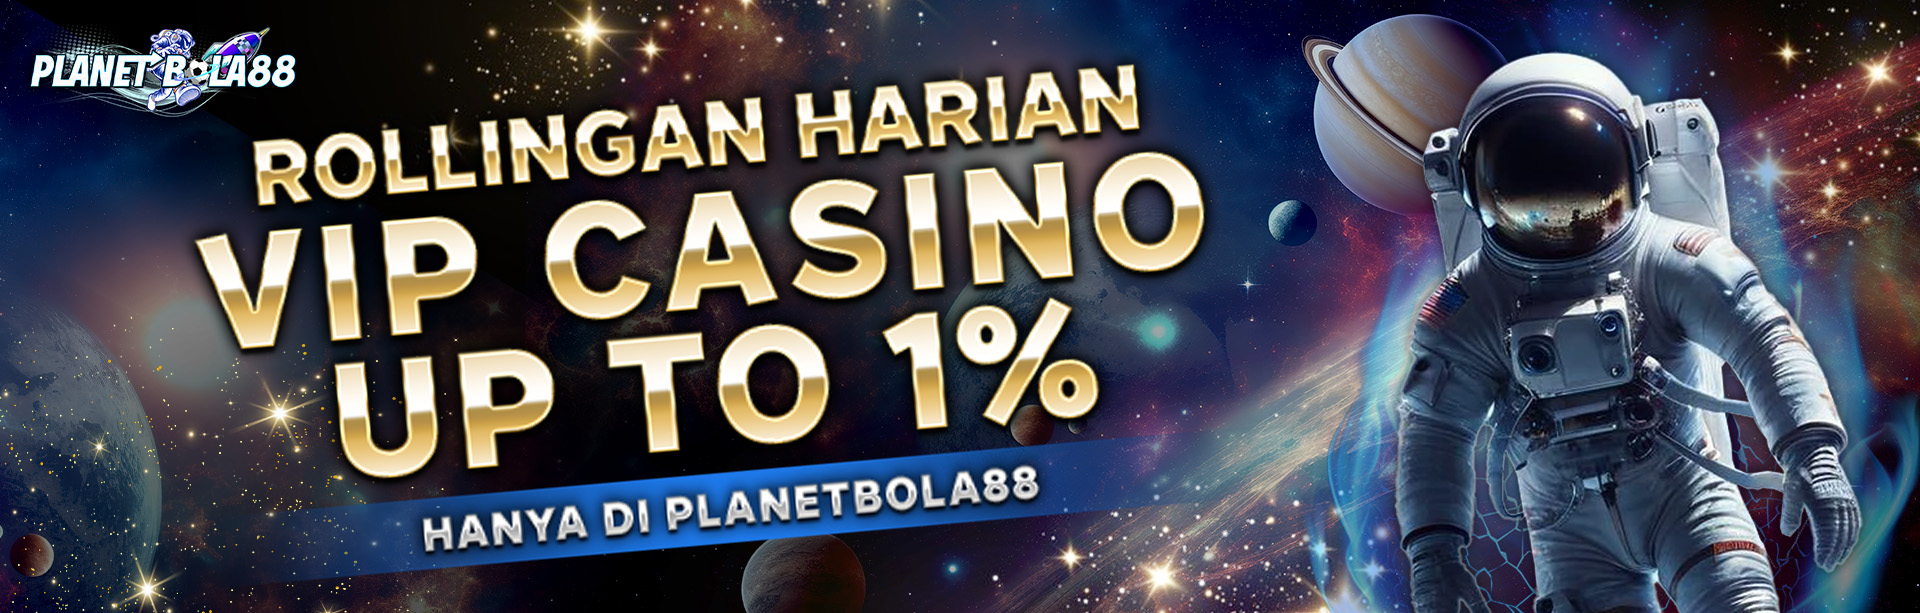 ROLLINGAN HARIAN VIP CASINO UP TO 1%